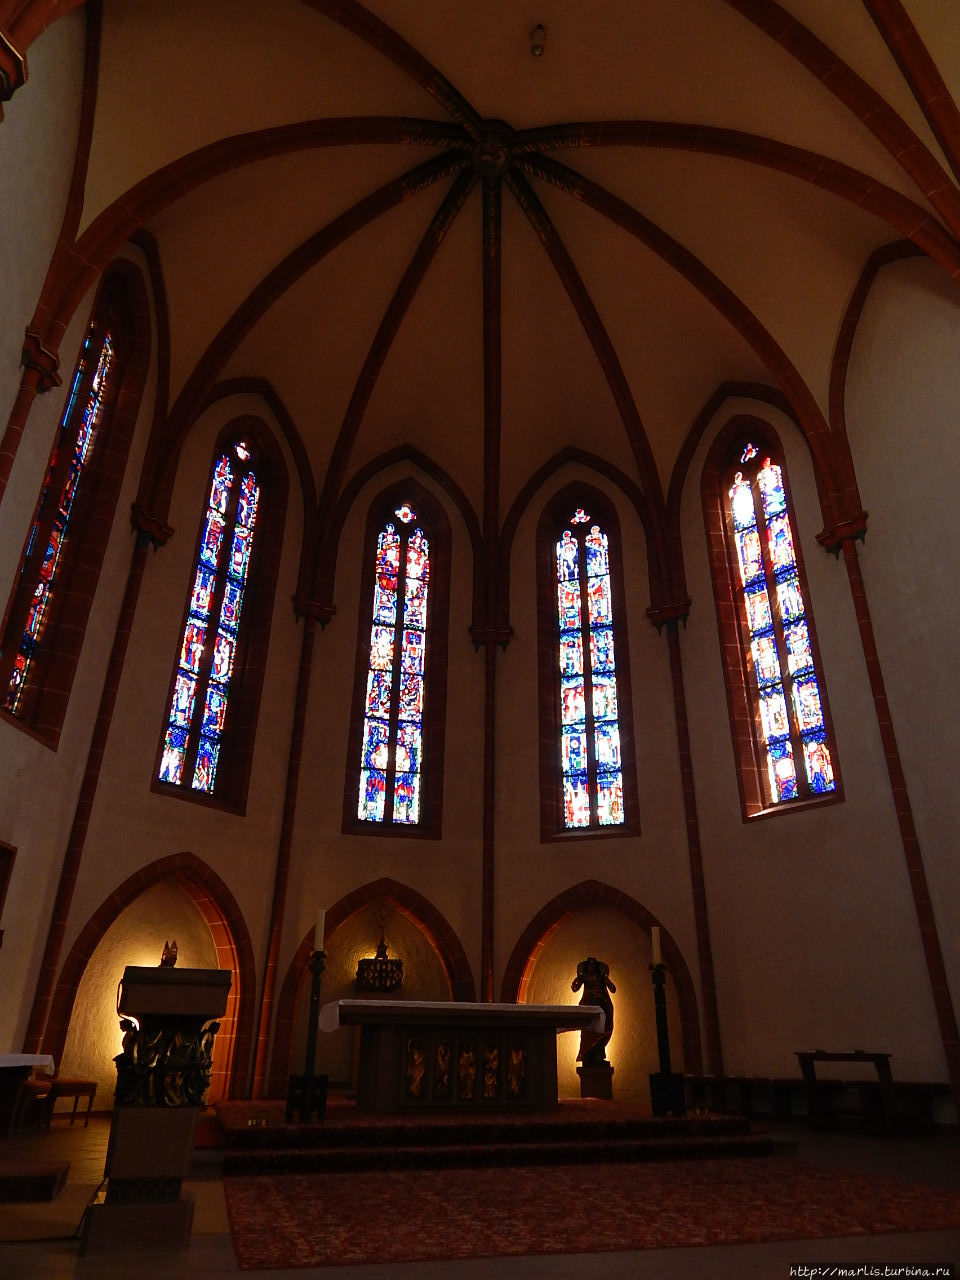 Католическая церковь Св. Галла, ранее кафедральный собор Ладенбург, Германия